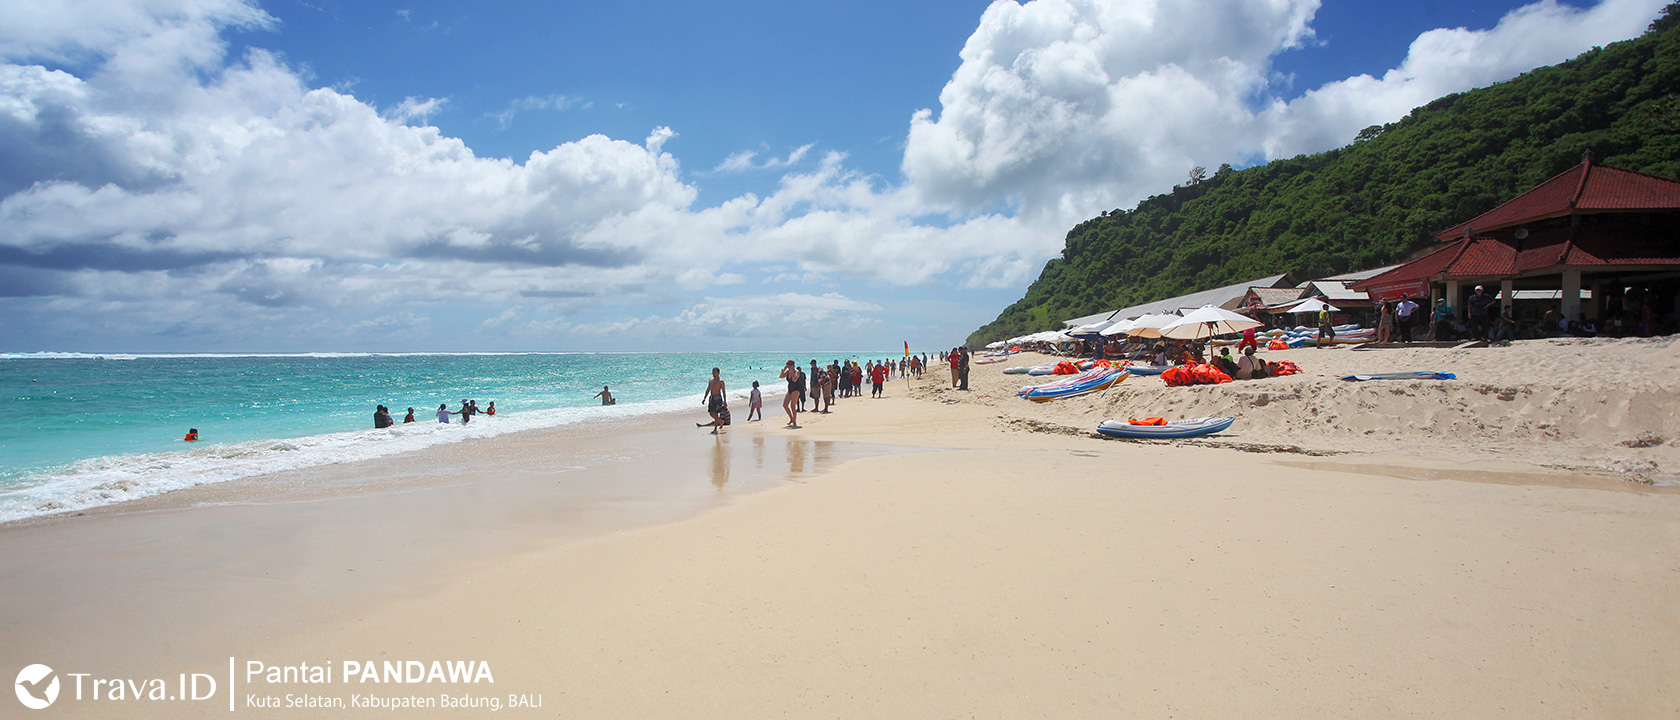  Pantai Pandawa Bali Salah Satu Pantai Paling Populer di Bali 